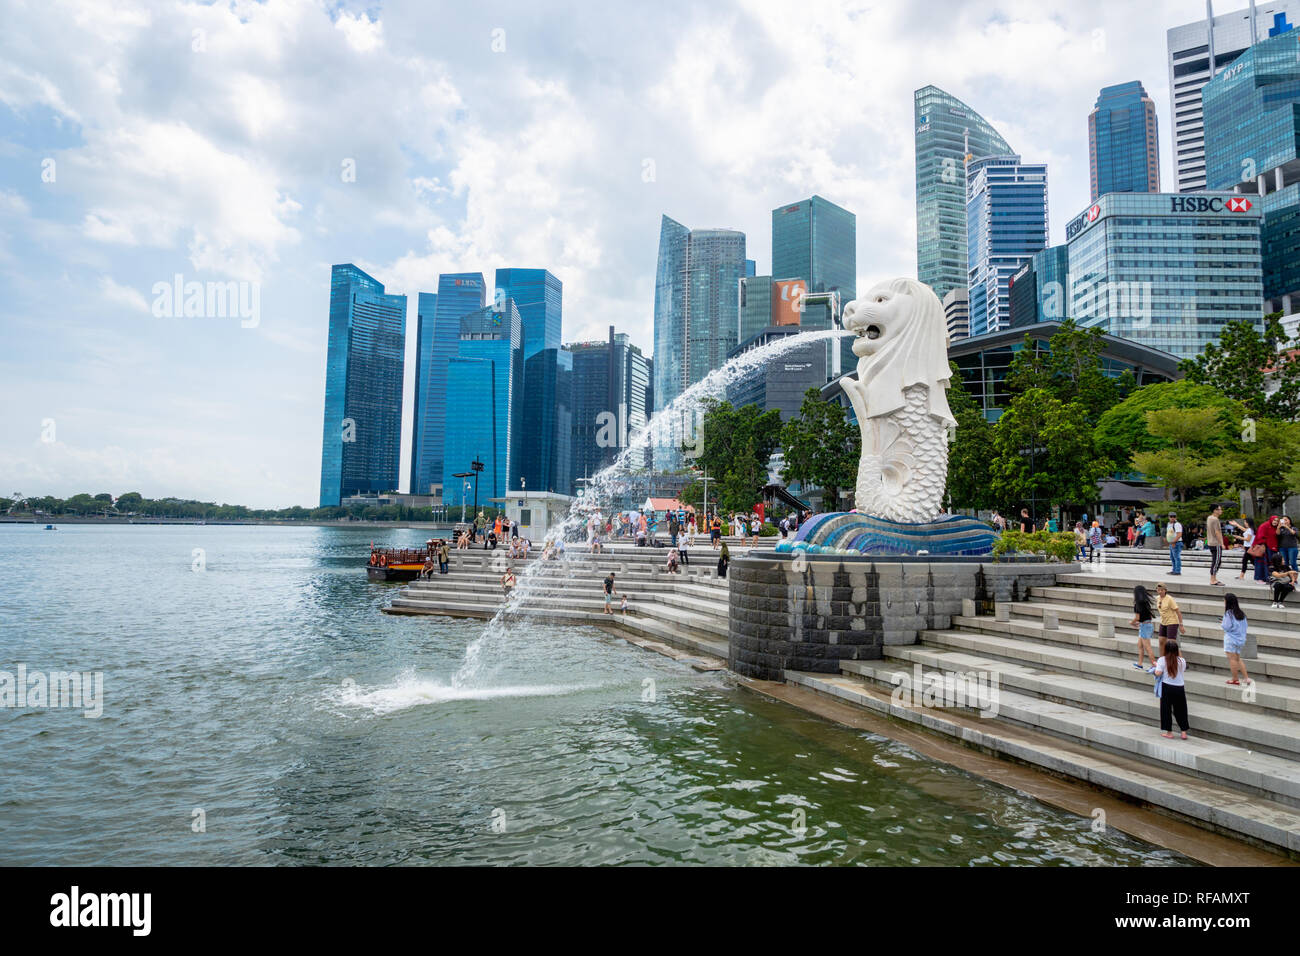 Singapur - Januar 2019: Besucher am Merlion Park in Singapur City Center. Merlion ist ein Wahrzeichen in Singapur und ein beliebtes Ziel für Touristen. Stockfoto